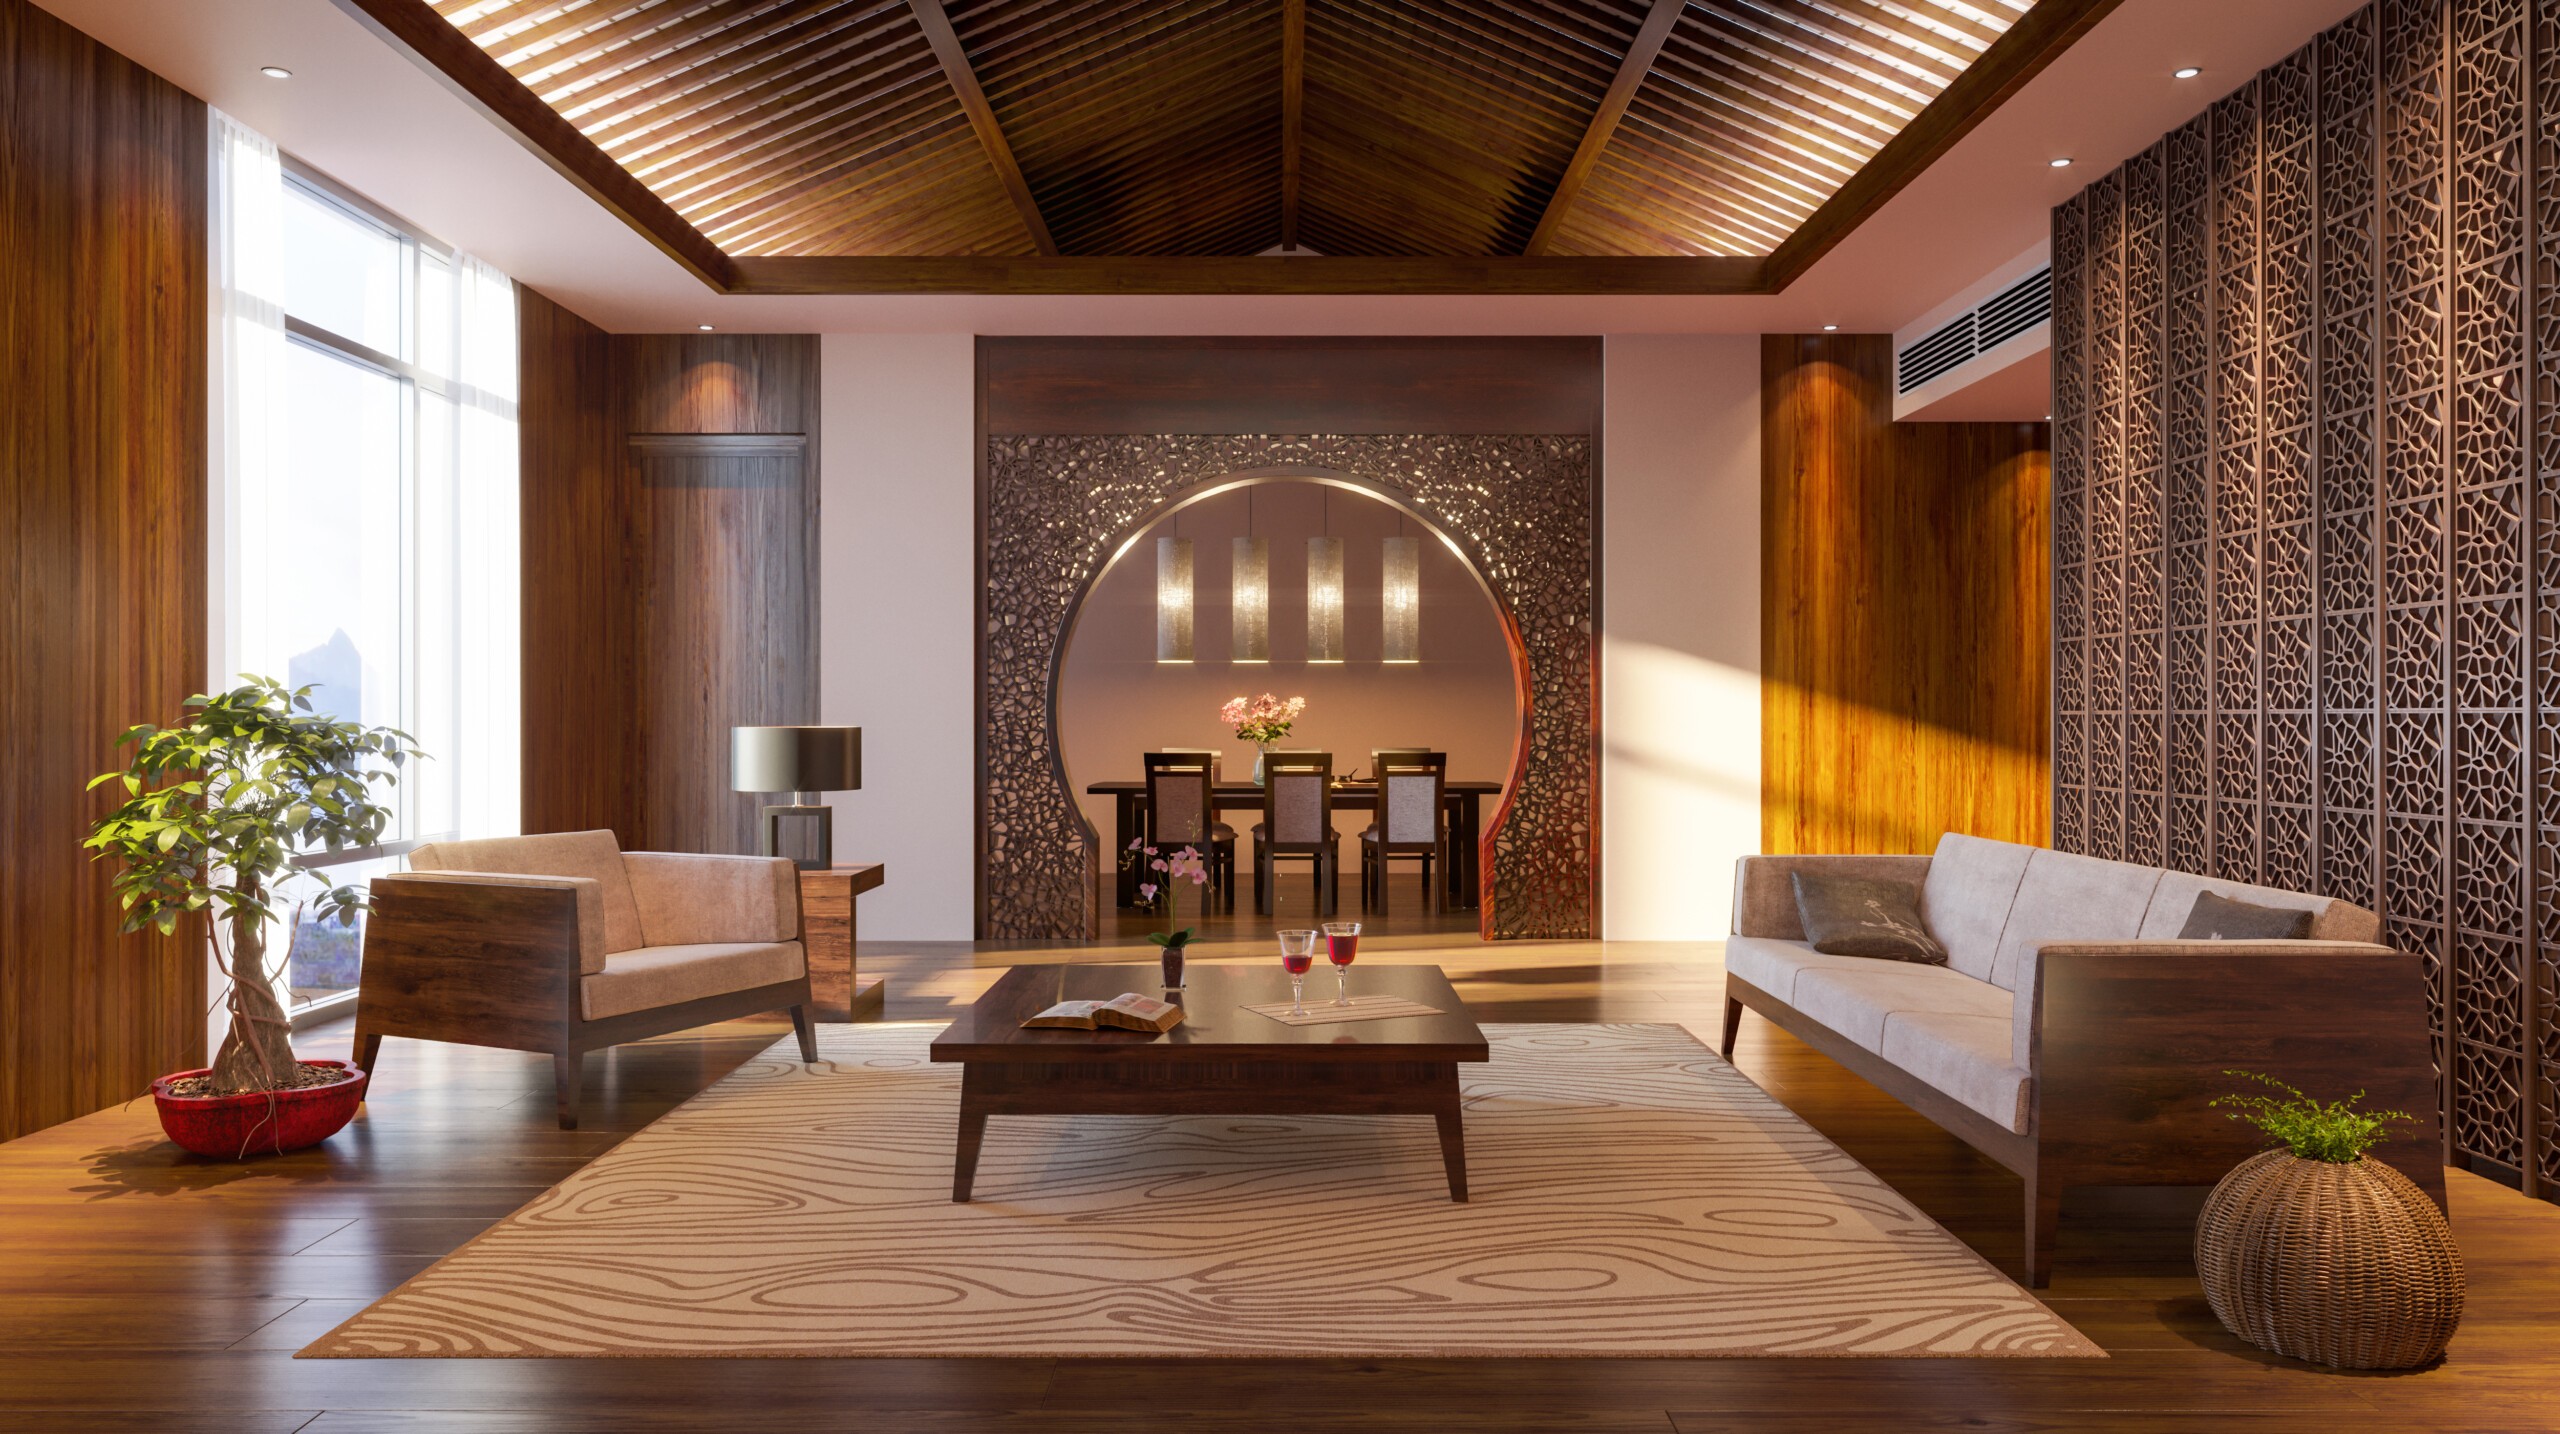 DESIGN BADDIE Style Deep Dive: This is Asian Zen Interior Design